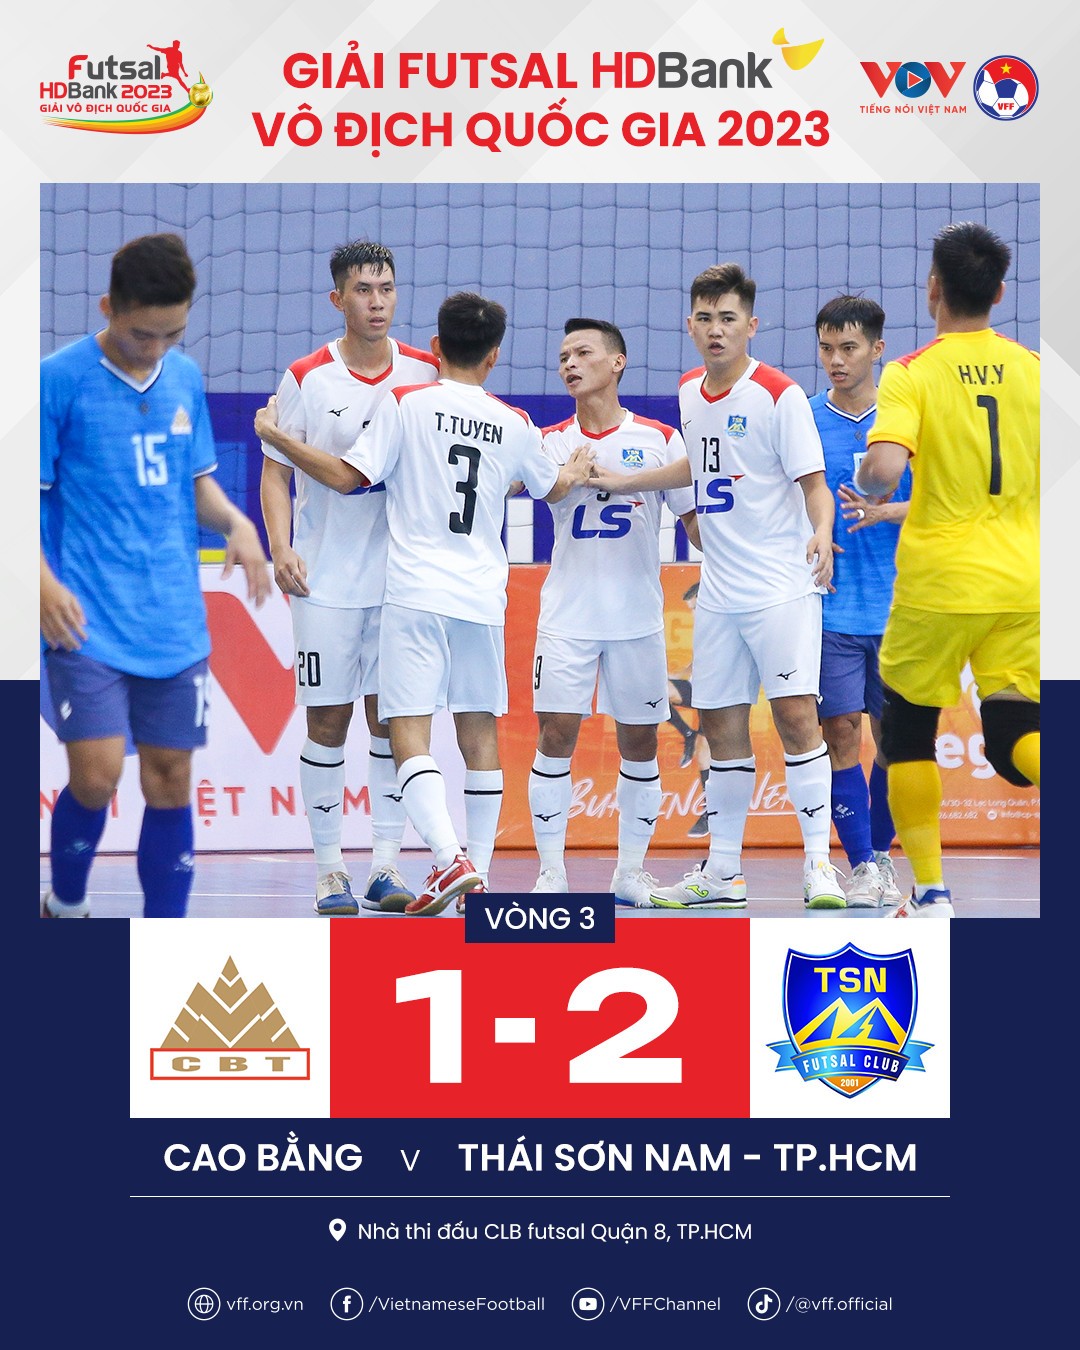 Vòng 3 Futsal HDBank 2023: Thái Sơn Nam TP.HCM và Sahako phô diễn sức mạnh